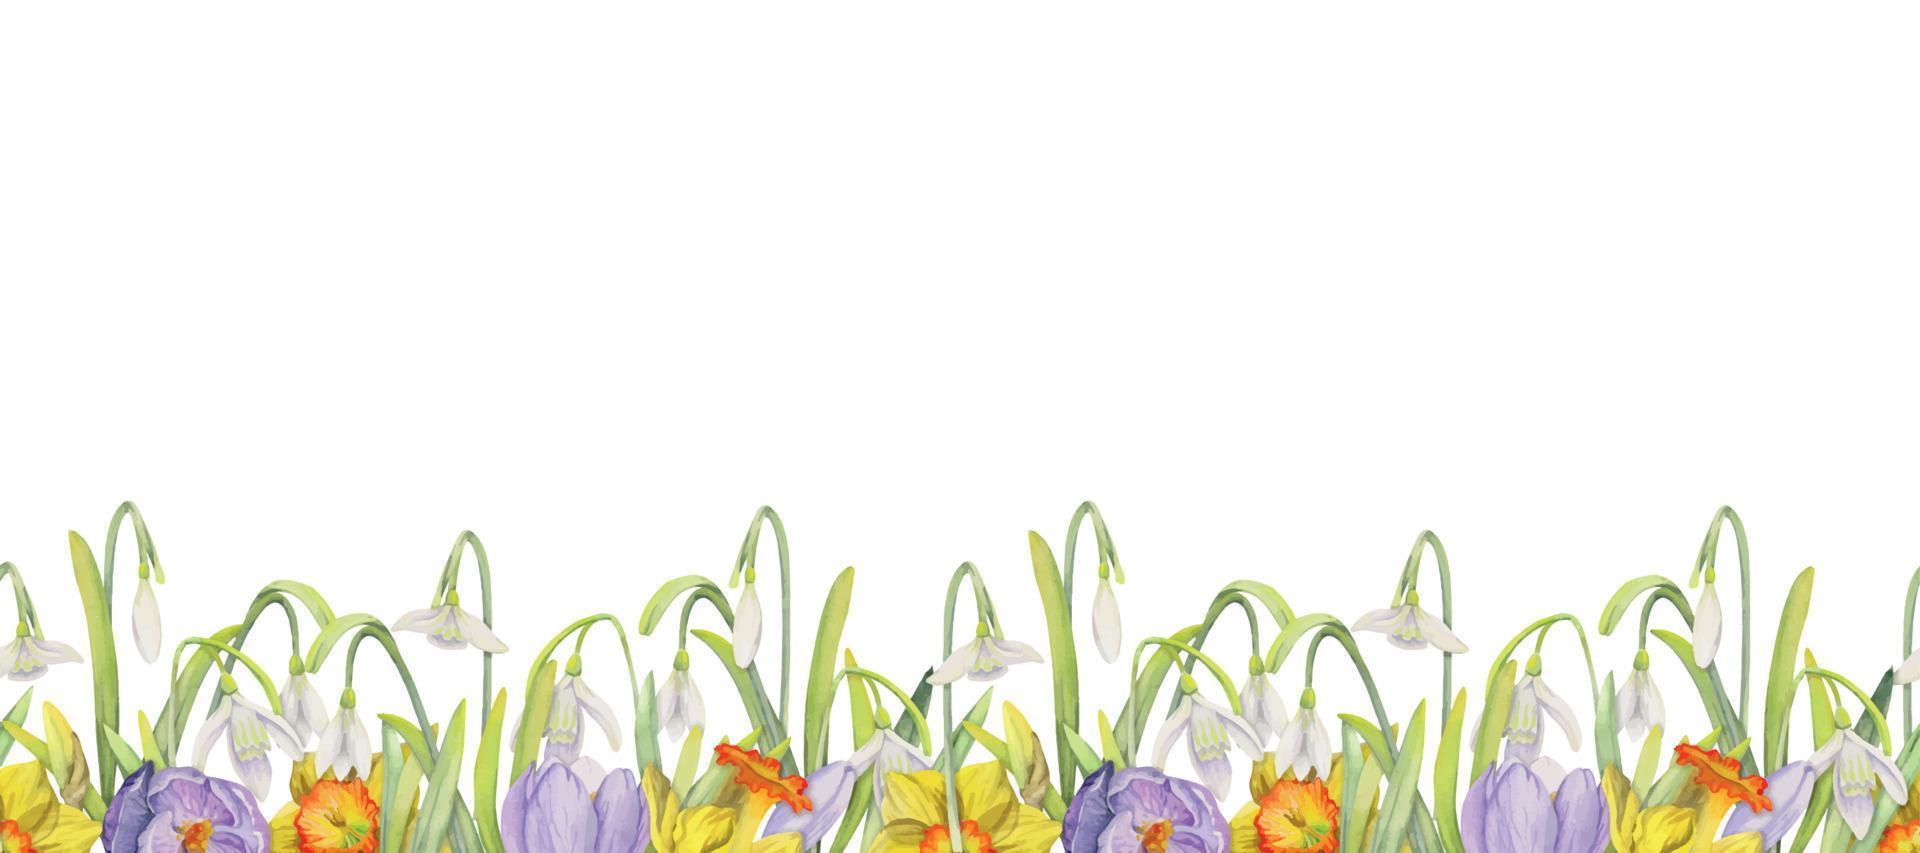 aquarell handgezeichnete nahtlose grenze mit frühlingsblumen, narzissen, krokus, schneeglöckchen. isoliert auf weißem Hintergrund. design für einladungen, hochzeit, grußkarten, tapeten, druck, textil vektor